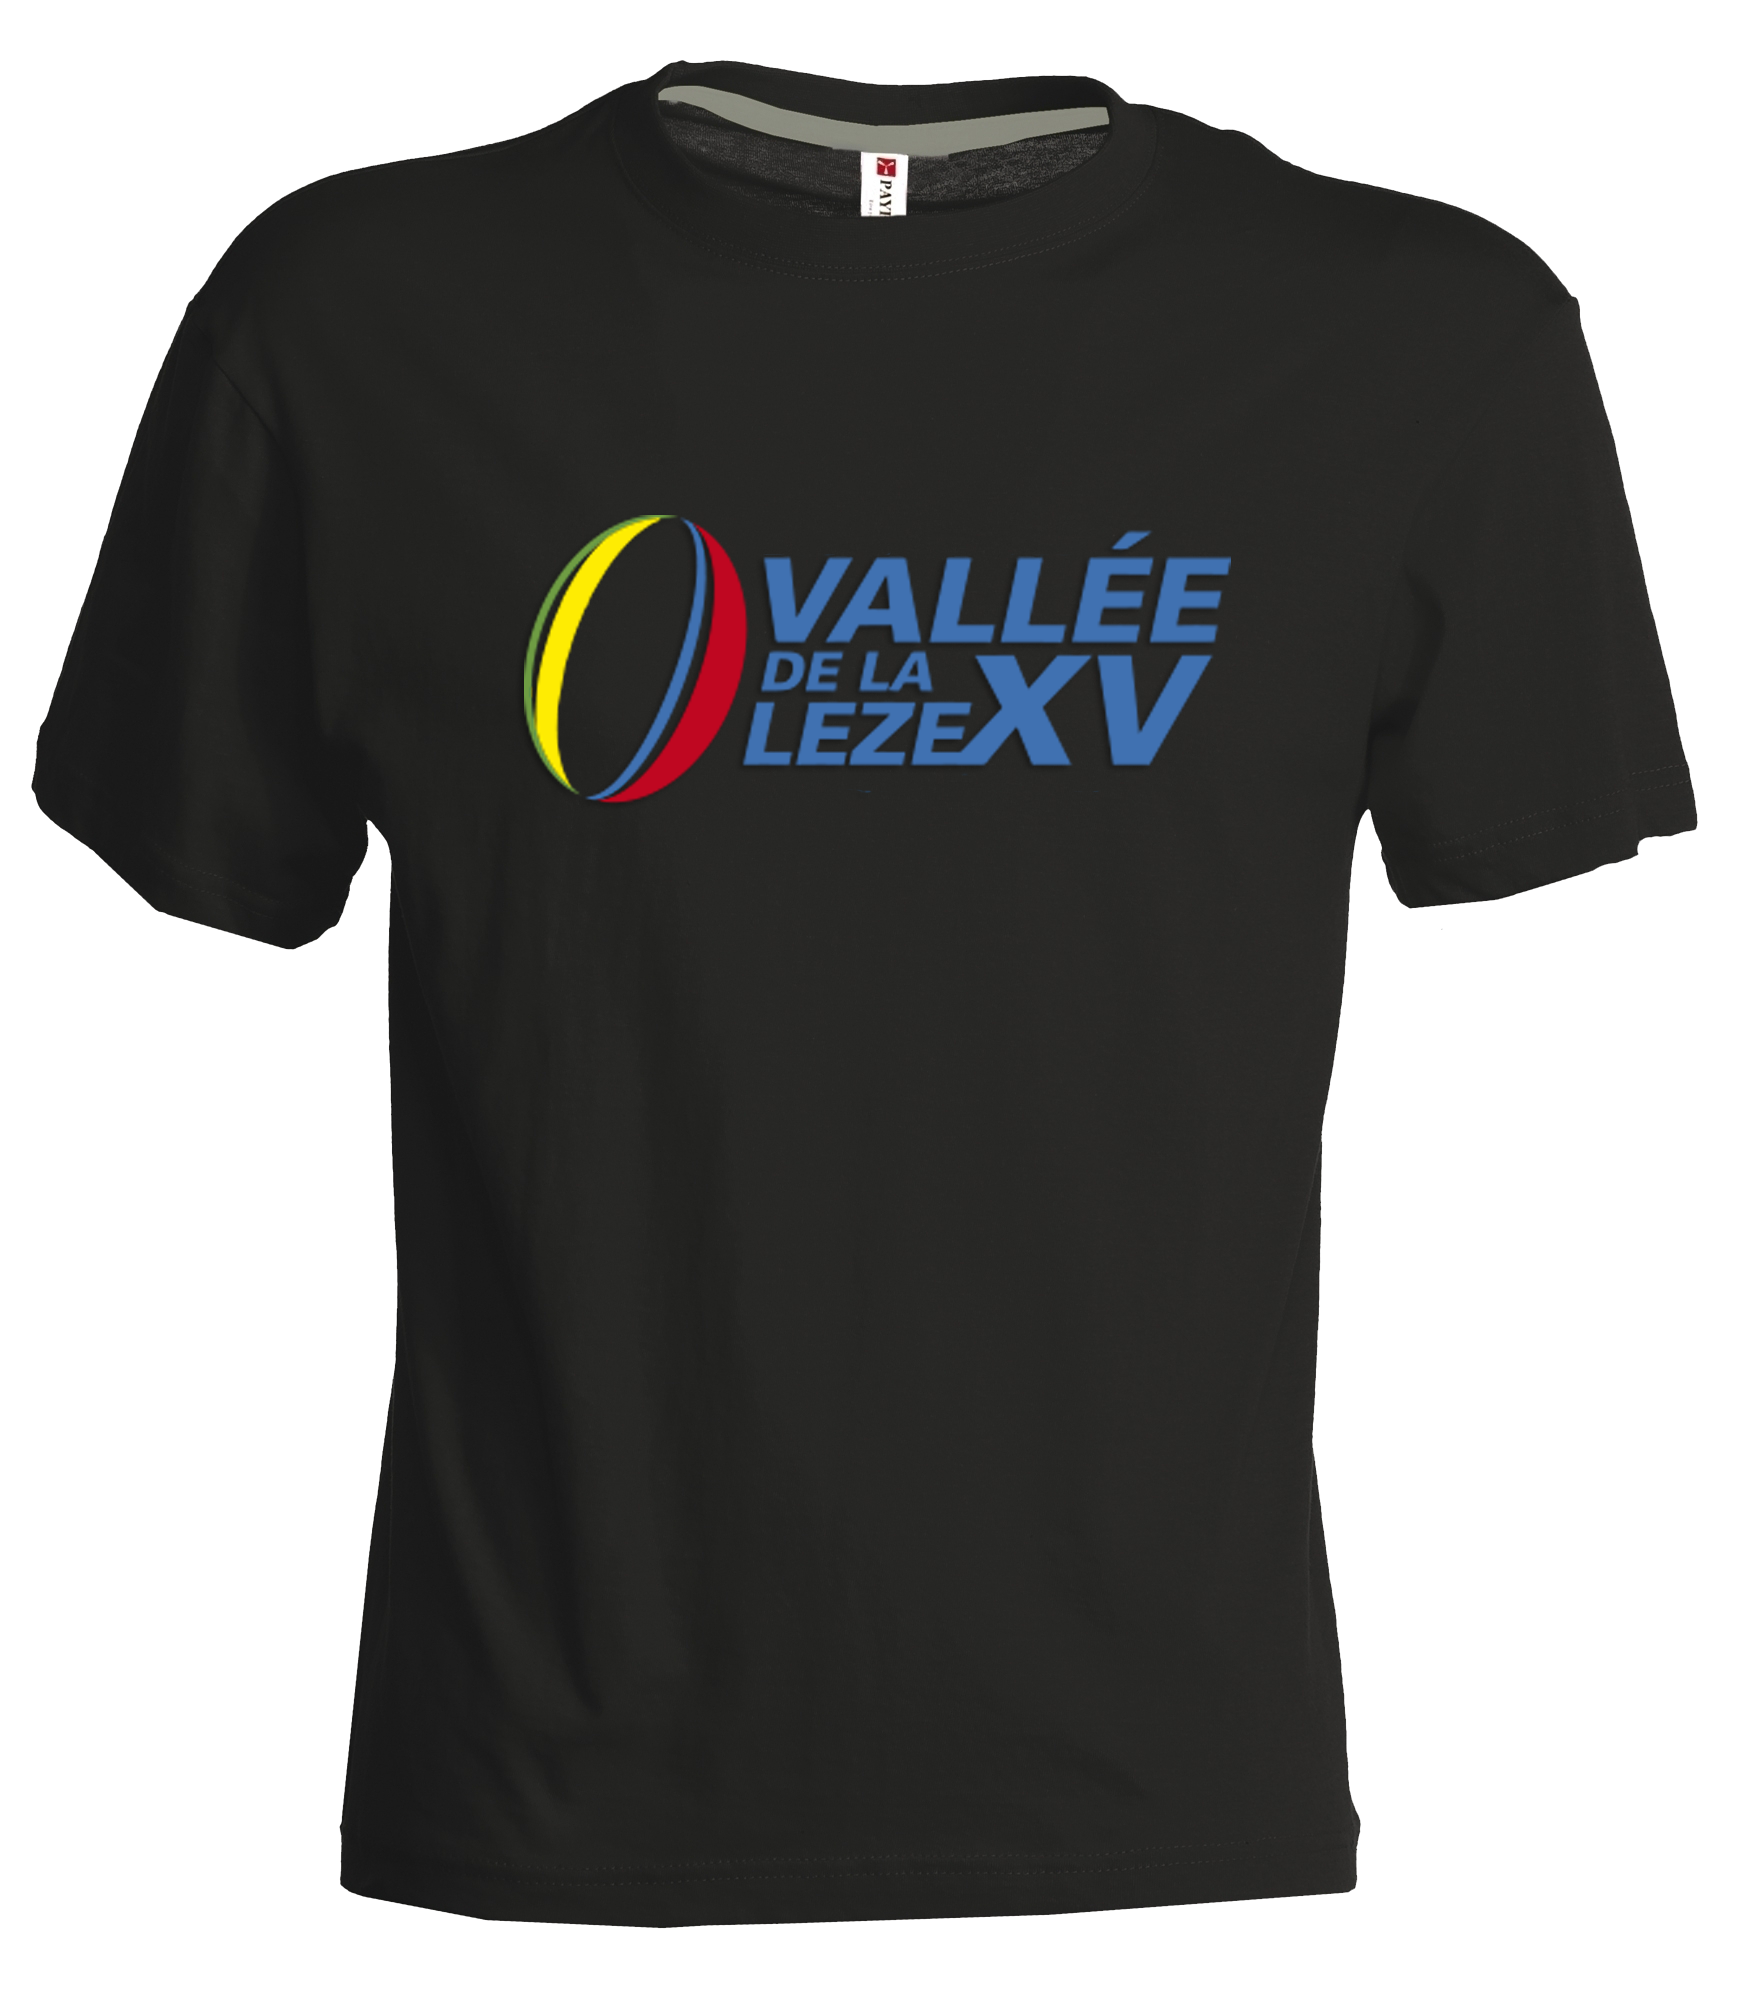 Tshirt Vallée de la Leze